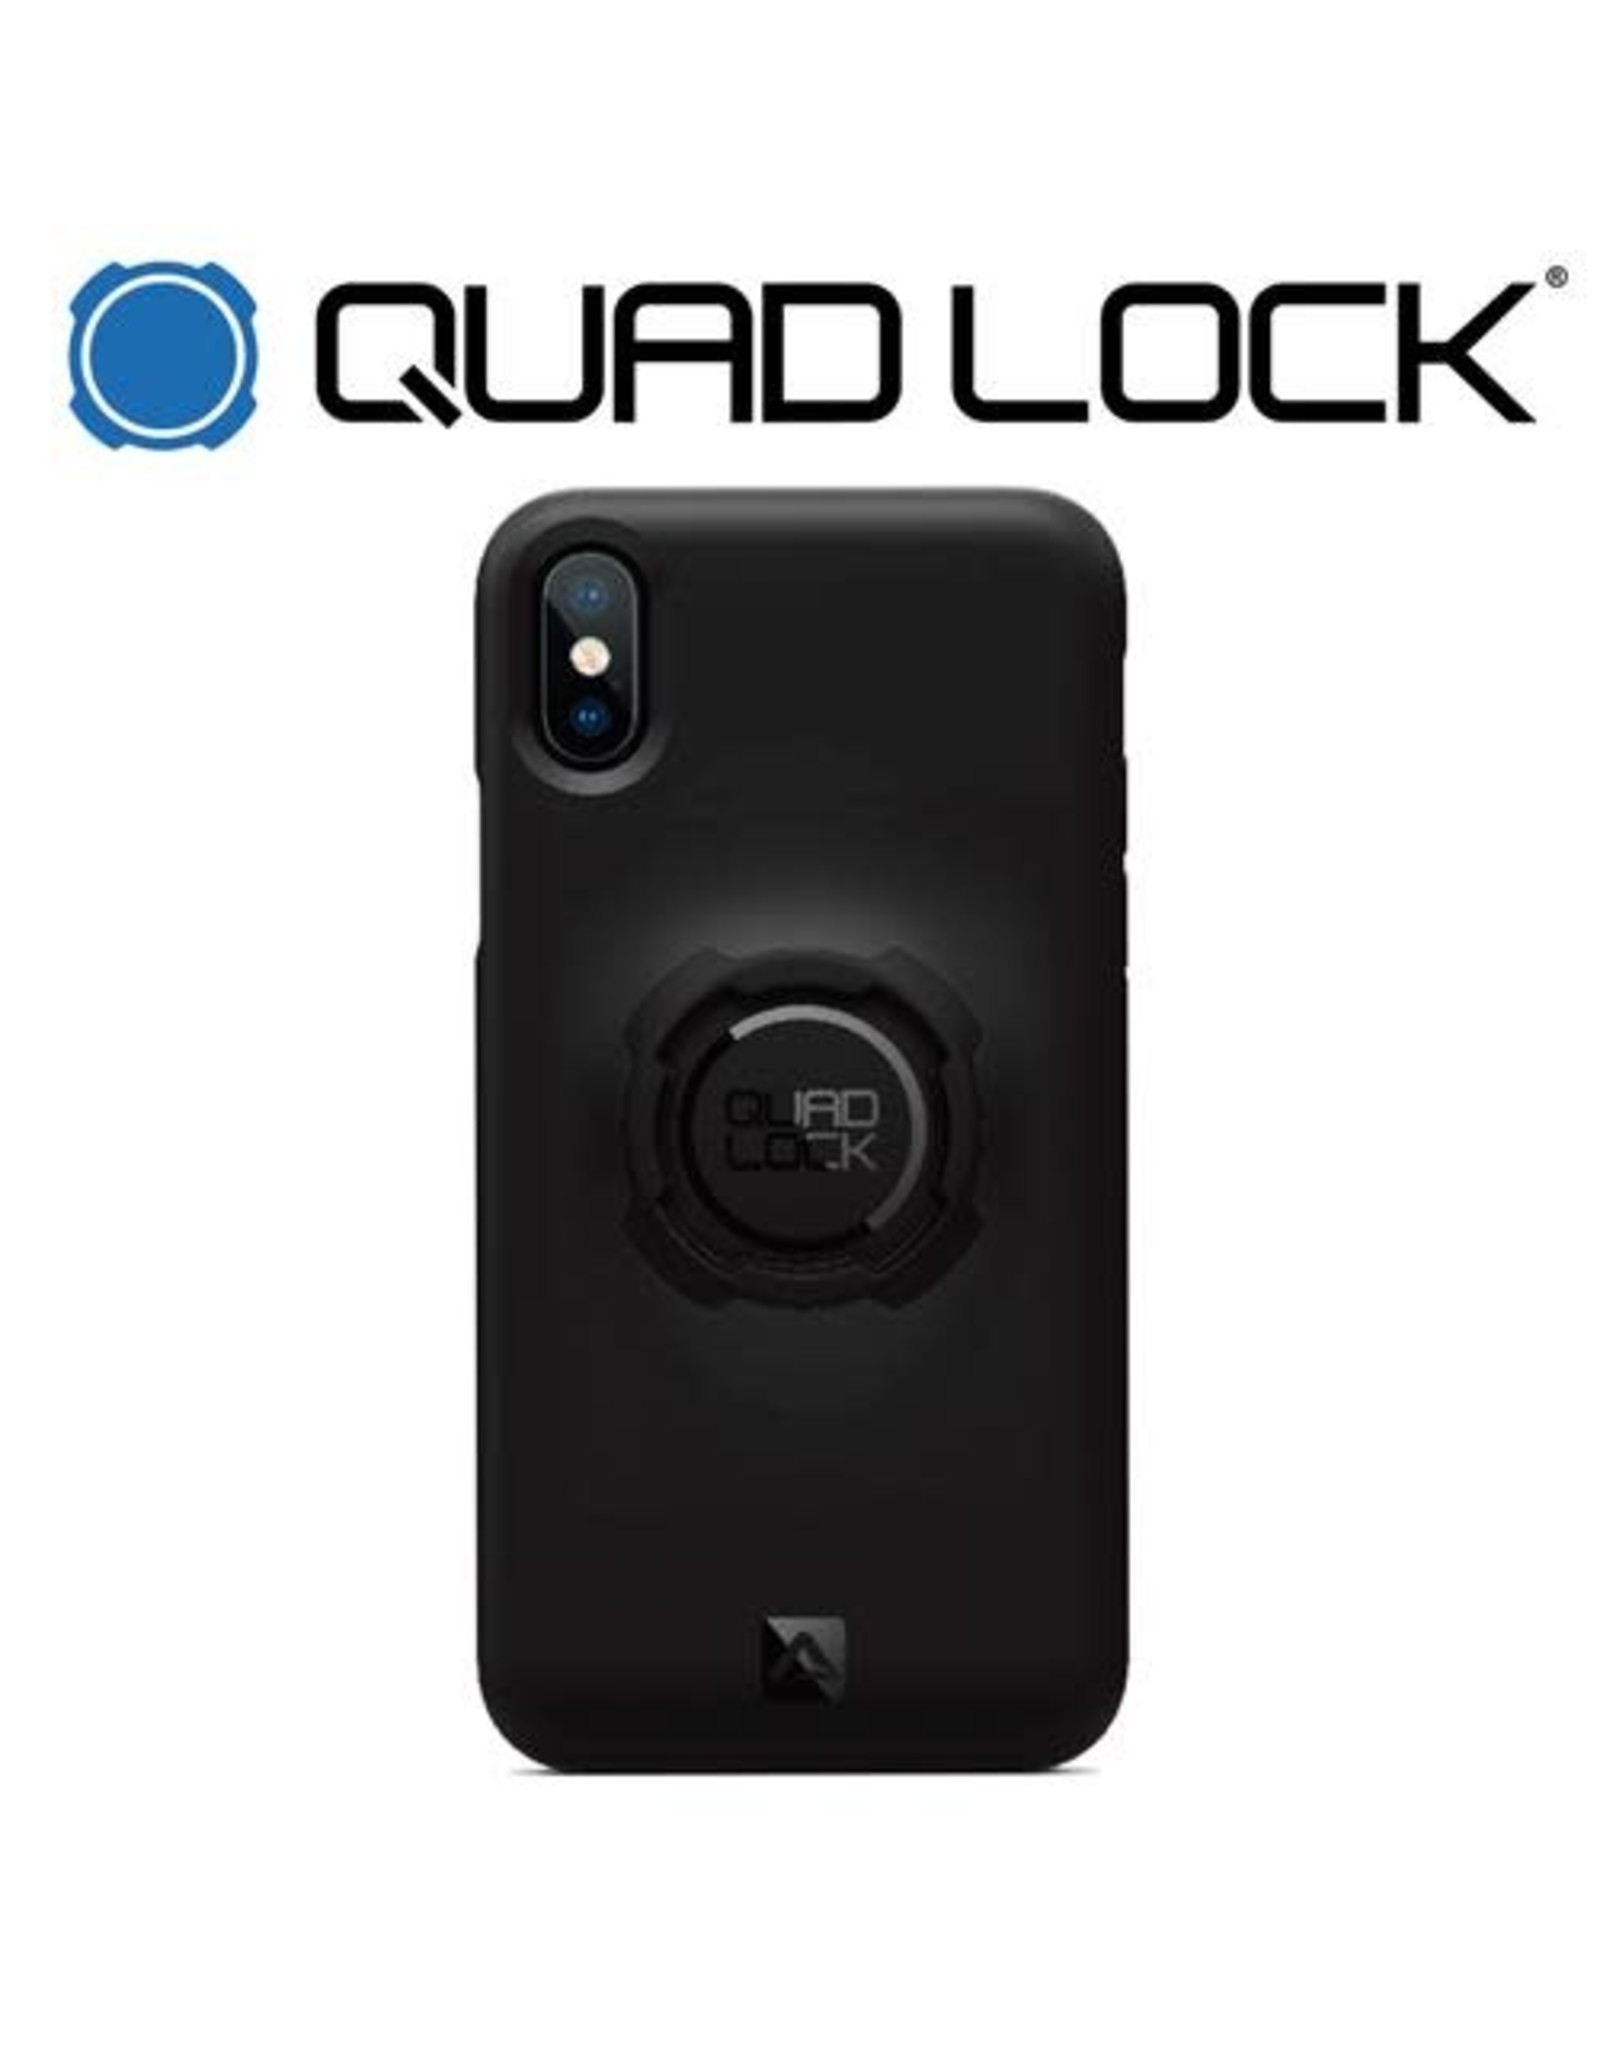 QUAD LOCK QUAD LOCK FOR iPHONE X-XS PHONE CASE